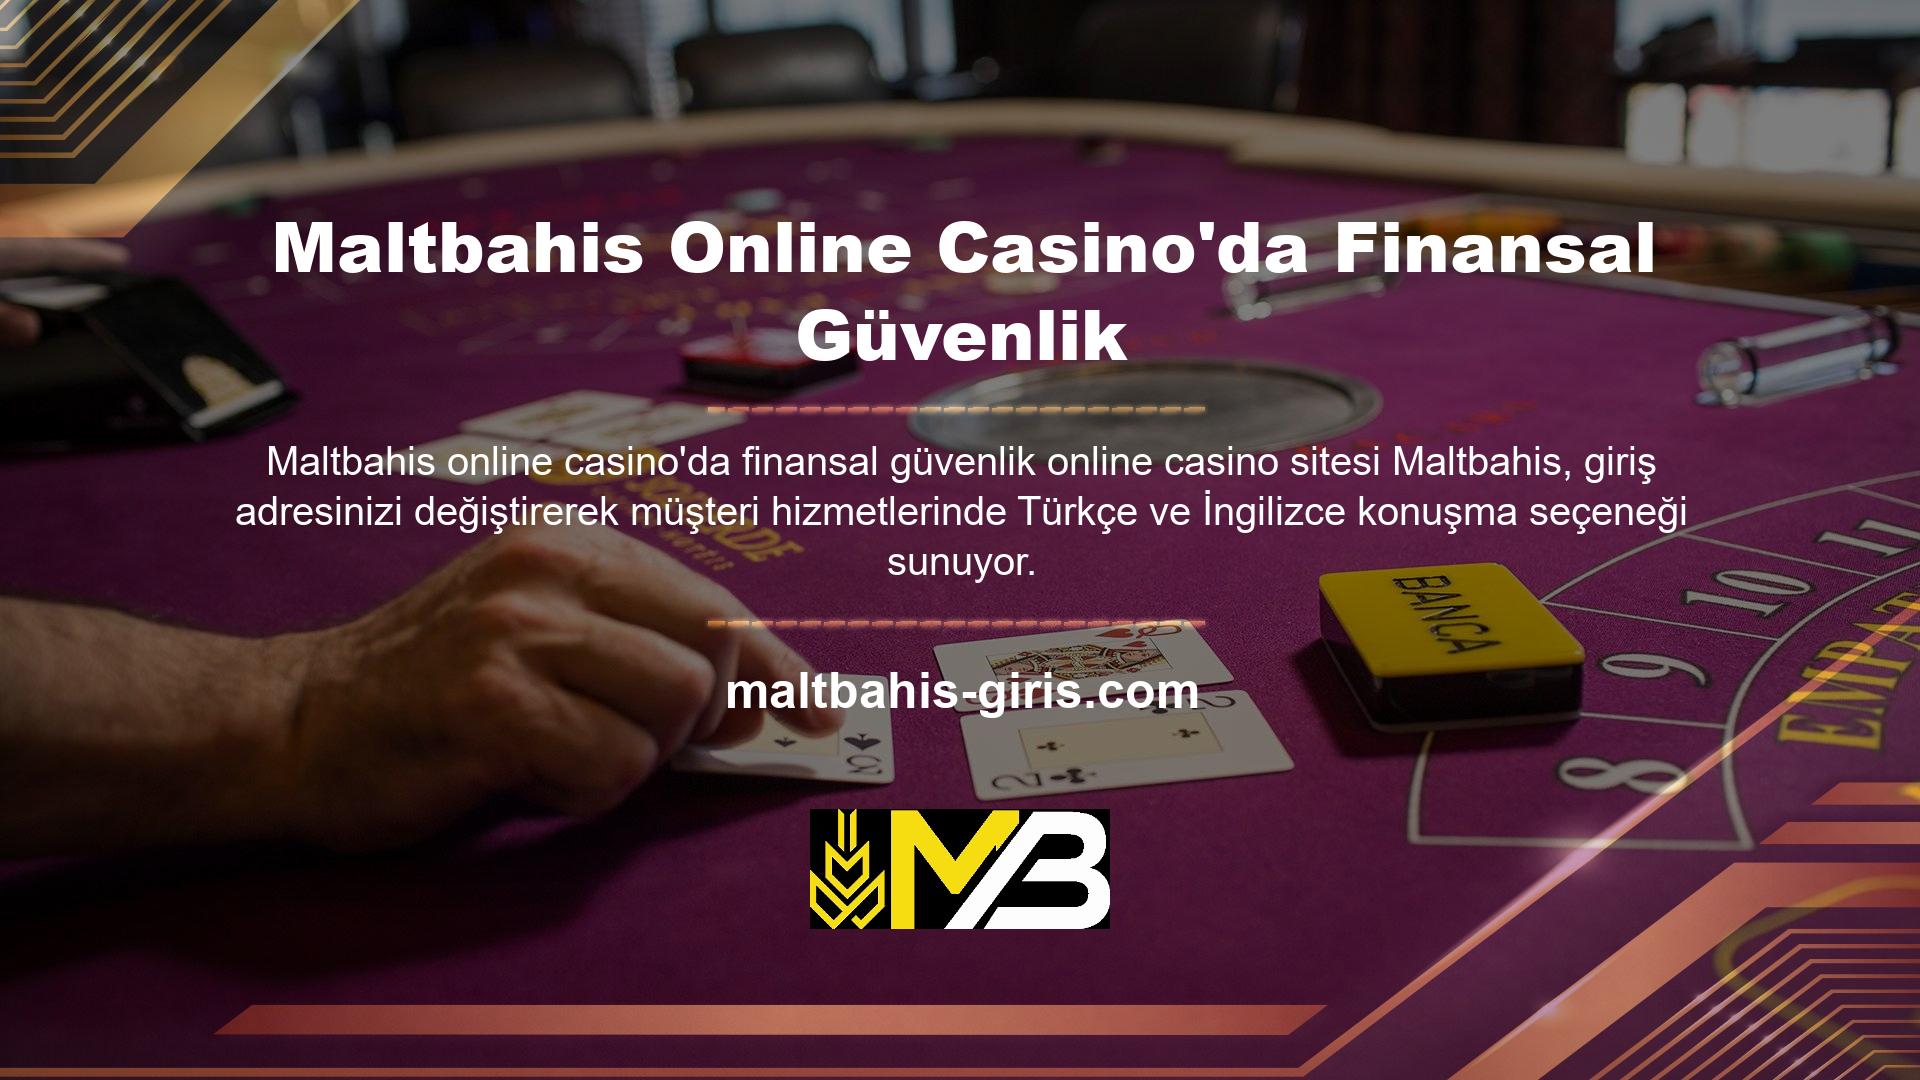 Maltbahis online casino finansal güvenliği, sanal casino, canlı casino, canlı bahis şirketi yatırım ve para çekme teknolojisi hakkında daha fazla bilgi için lütfen canlı destek ile iletişime geçin